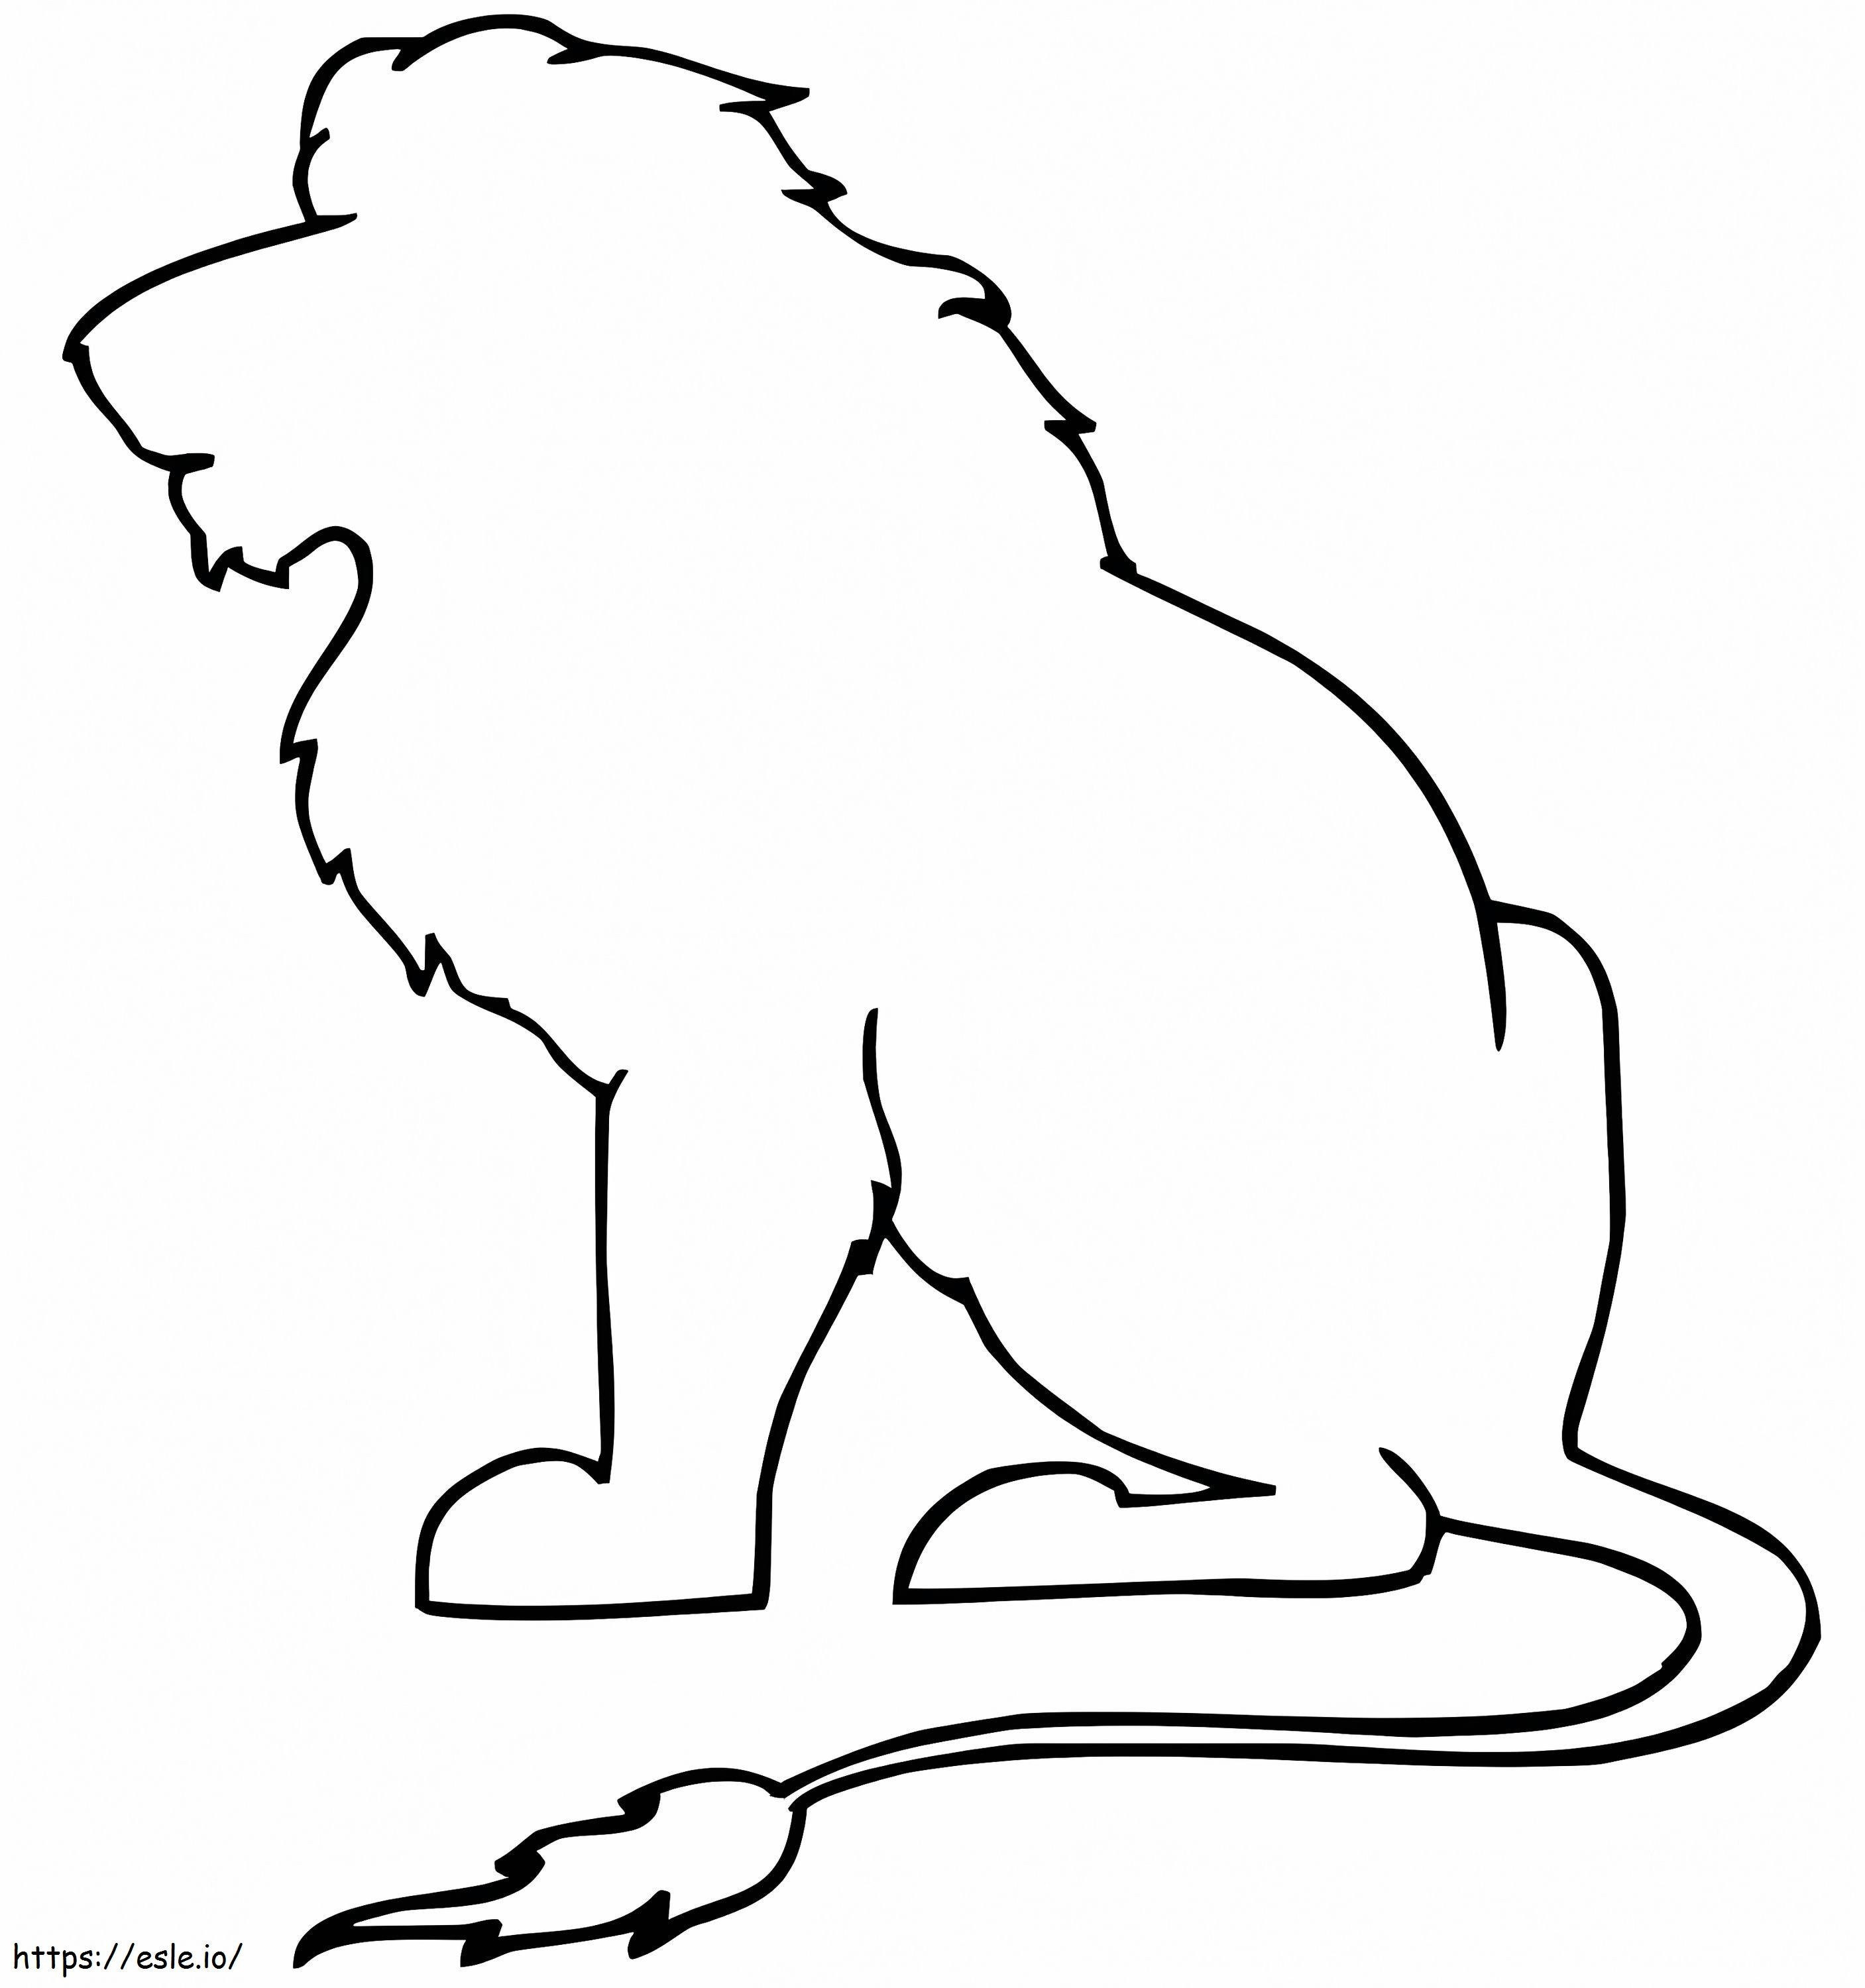 Vázlatos oroszlán kifestő